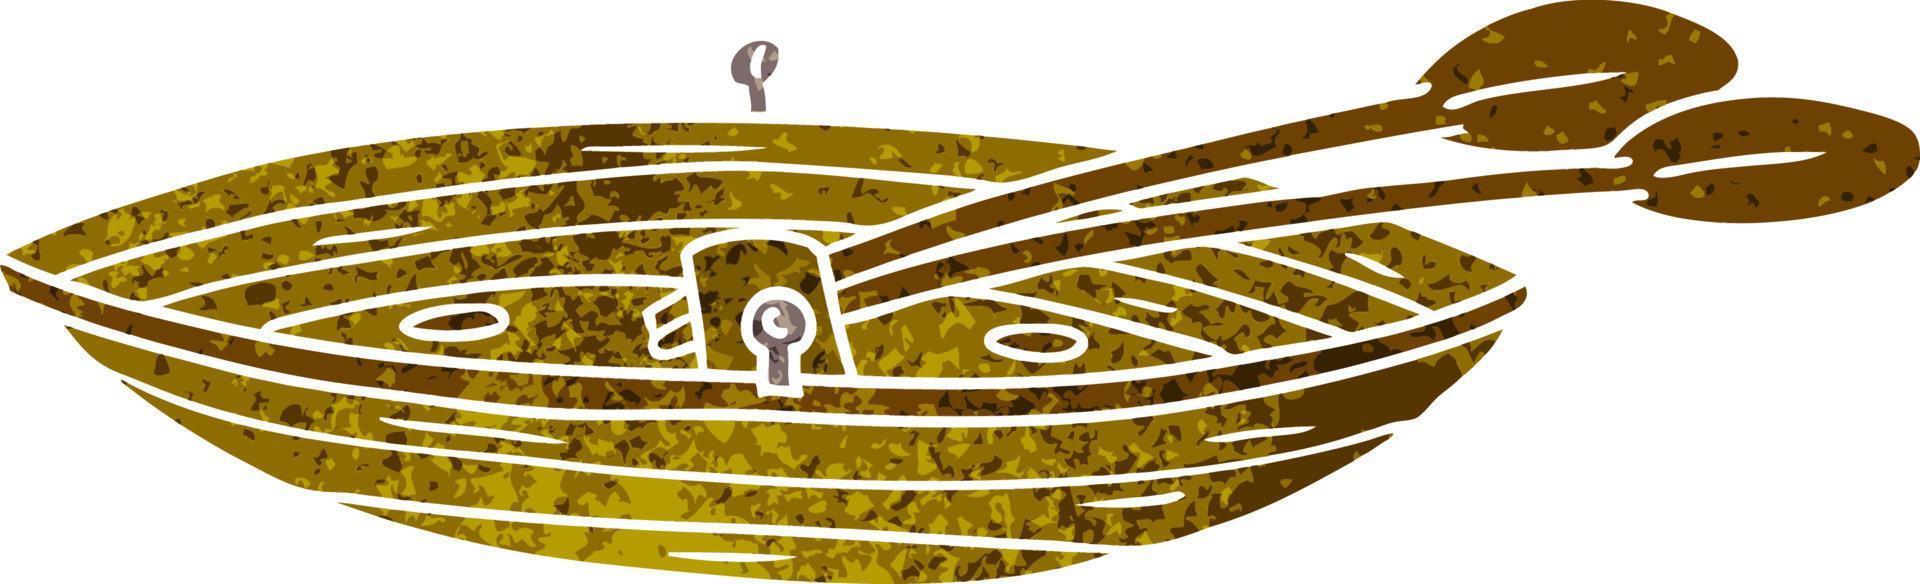 doodle retrò dei cartoni animati di una barca di legno vettore